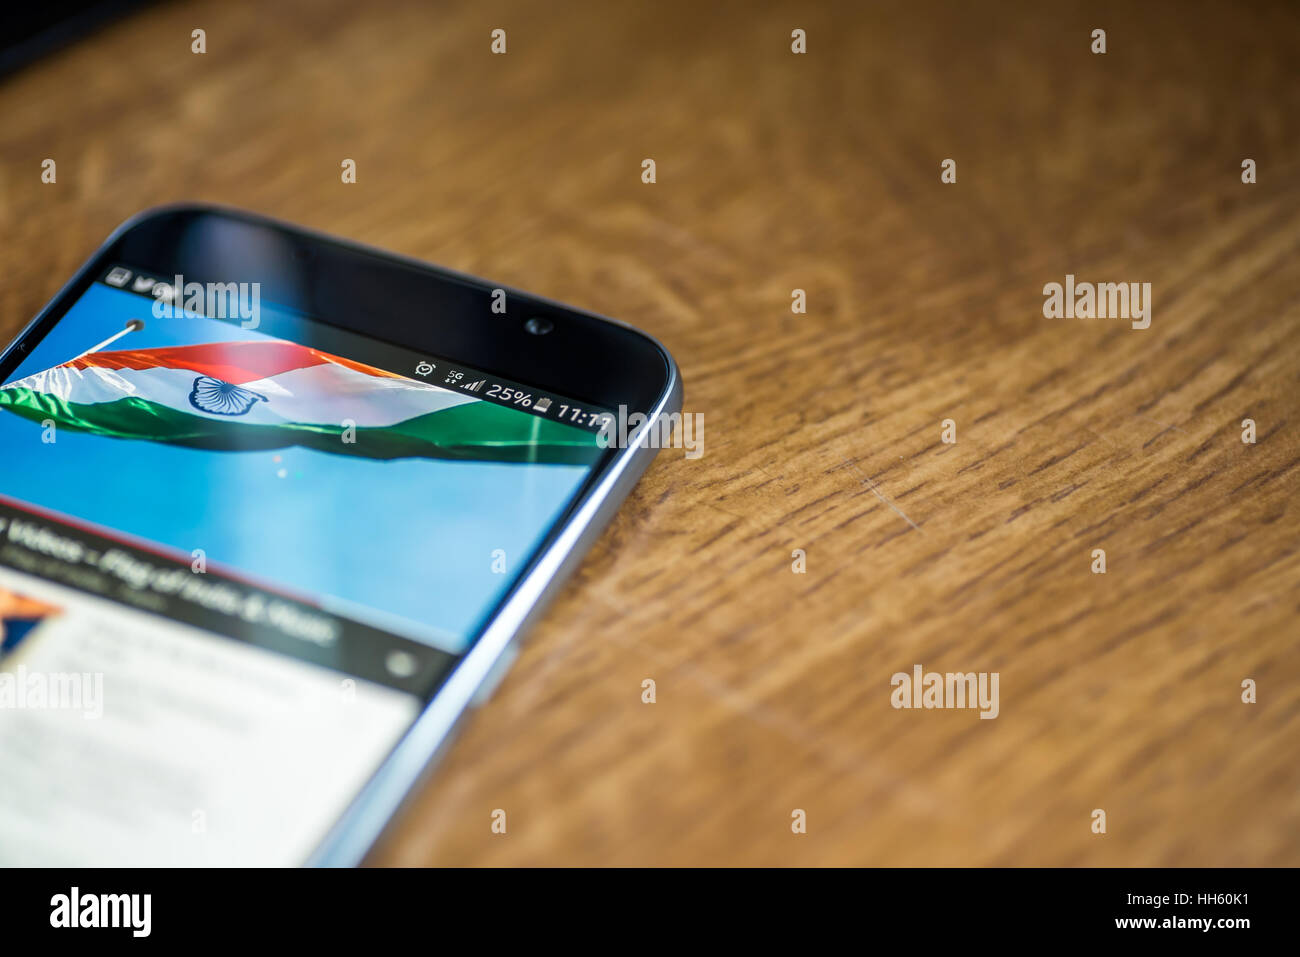 Sur fond de bois avec smartphone 5G Réseau inscription 25  % et l'Inde drapeau sur l'écran. Banque D'Images